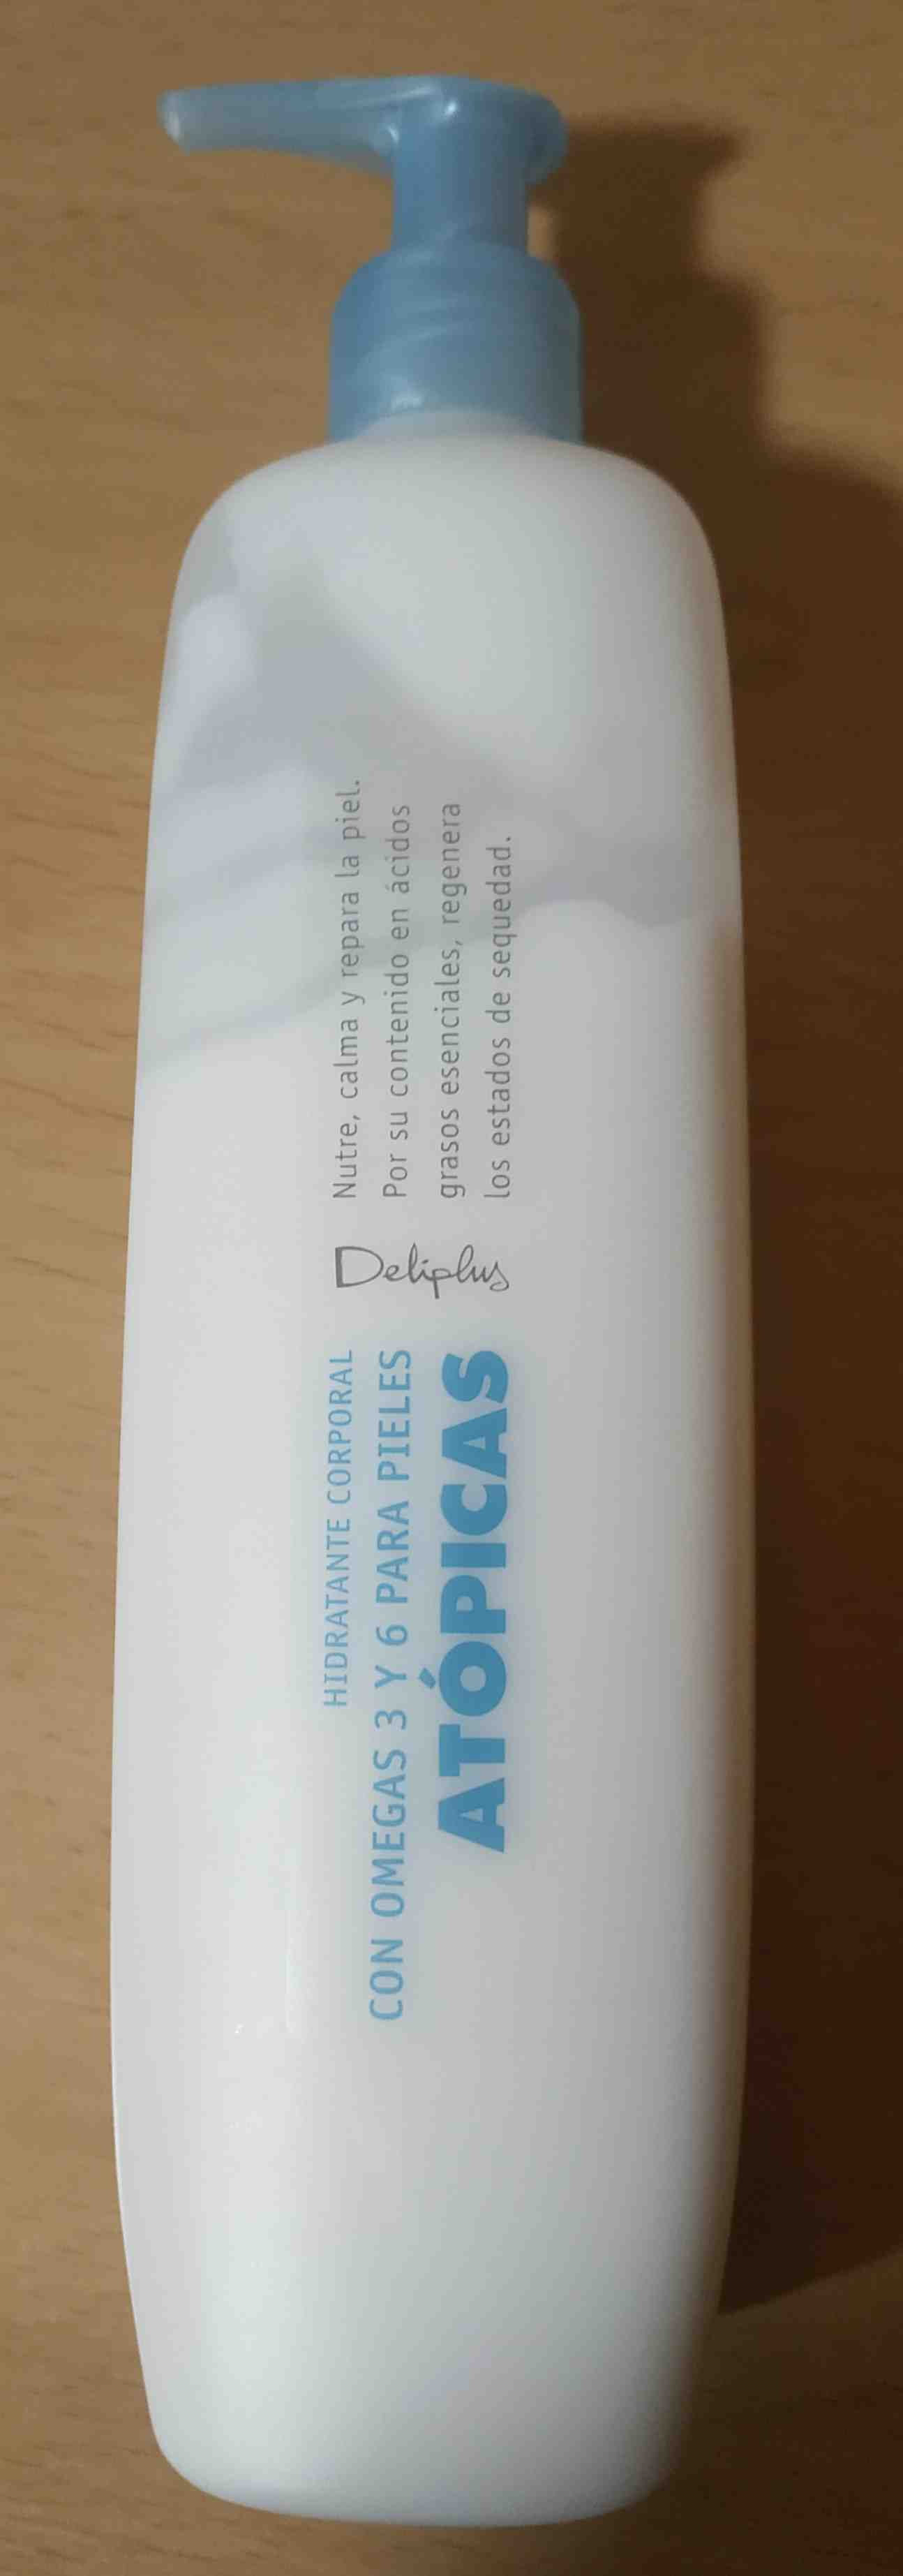 Deliplus Hidratante Corporal Atopicas - Product - en